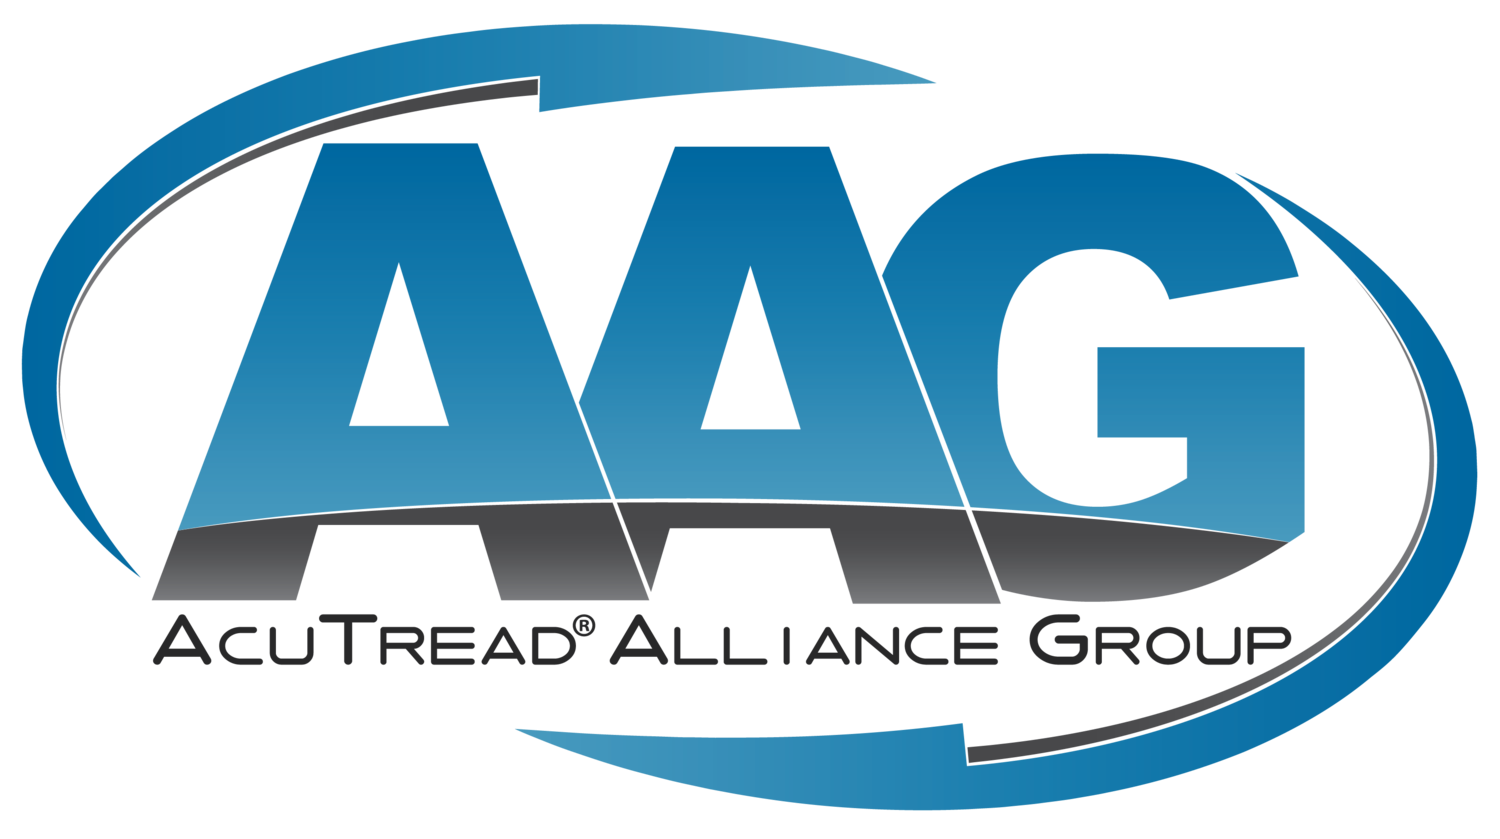 AcuTread® Alliance Group